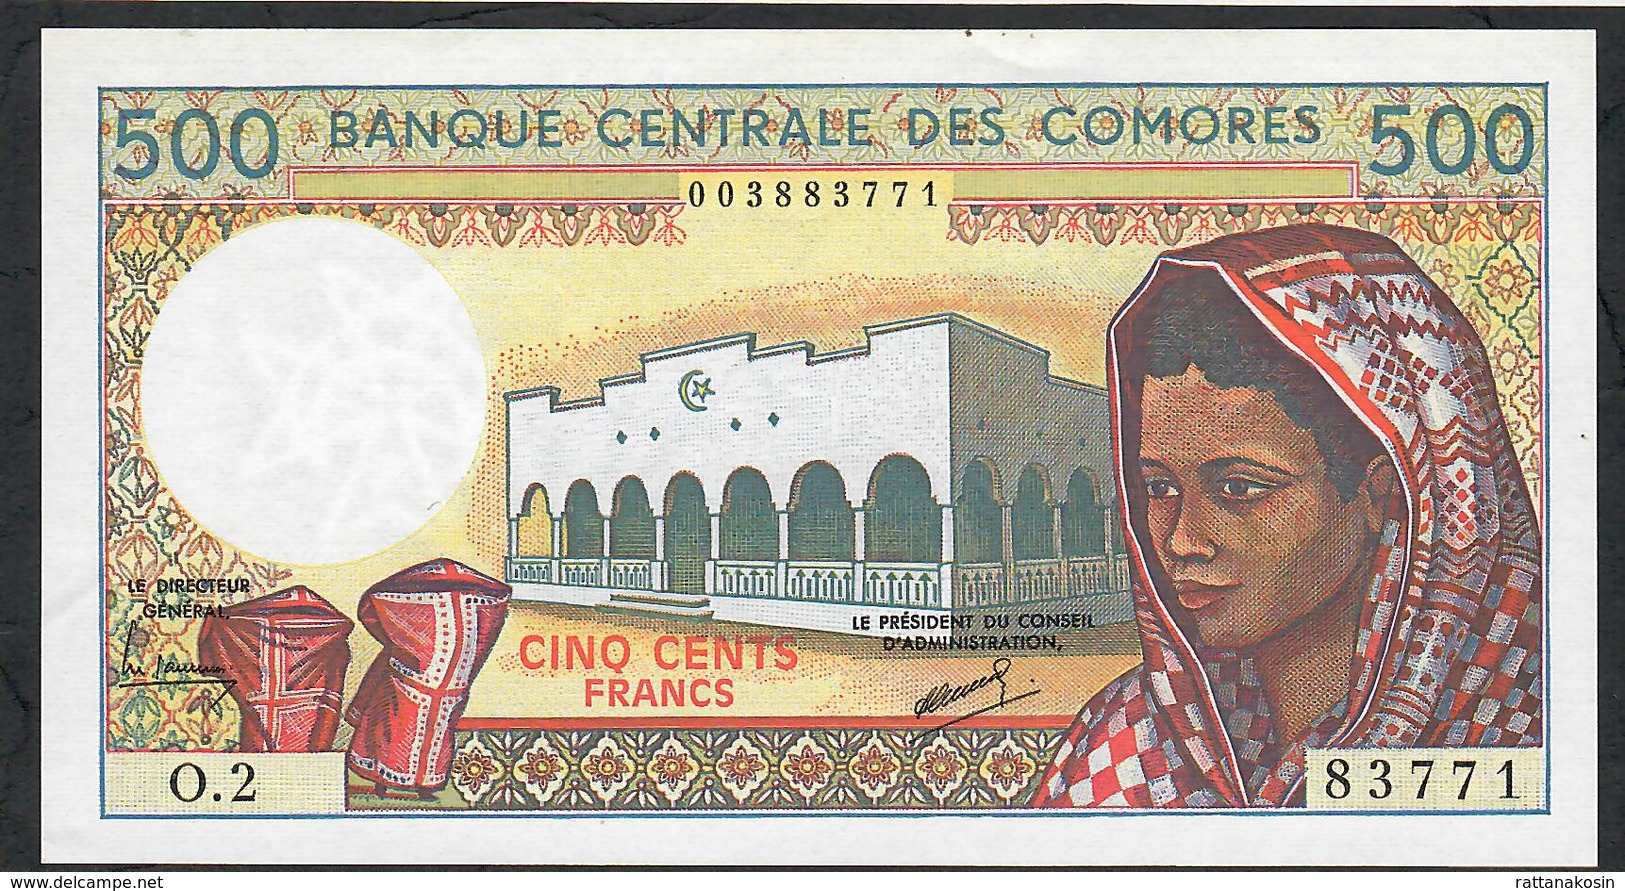 COMORES ERROR P10b INVERTED WATERMARK 500 FRANCS 1986 #O.2 Signature 2   UNC. - Komoren